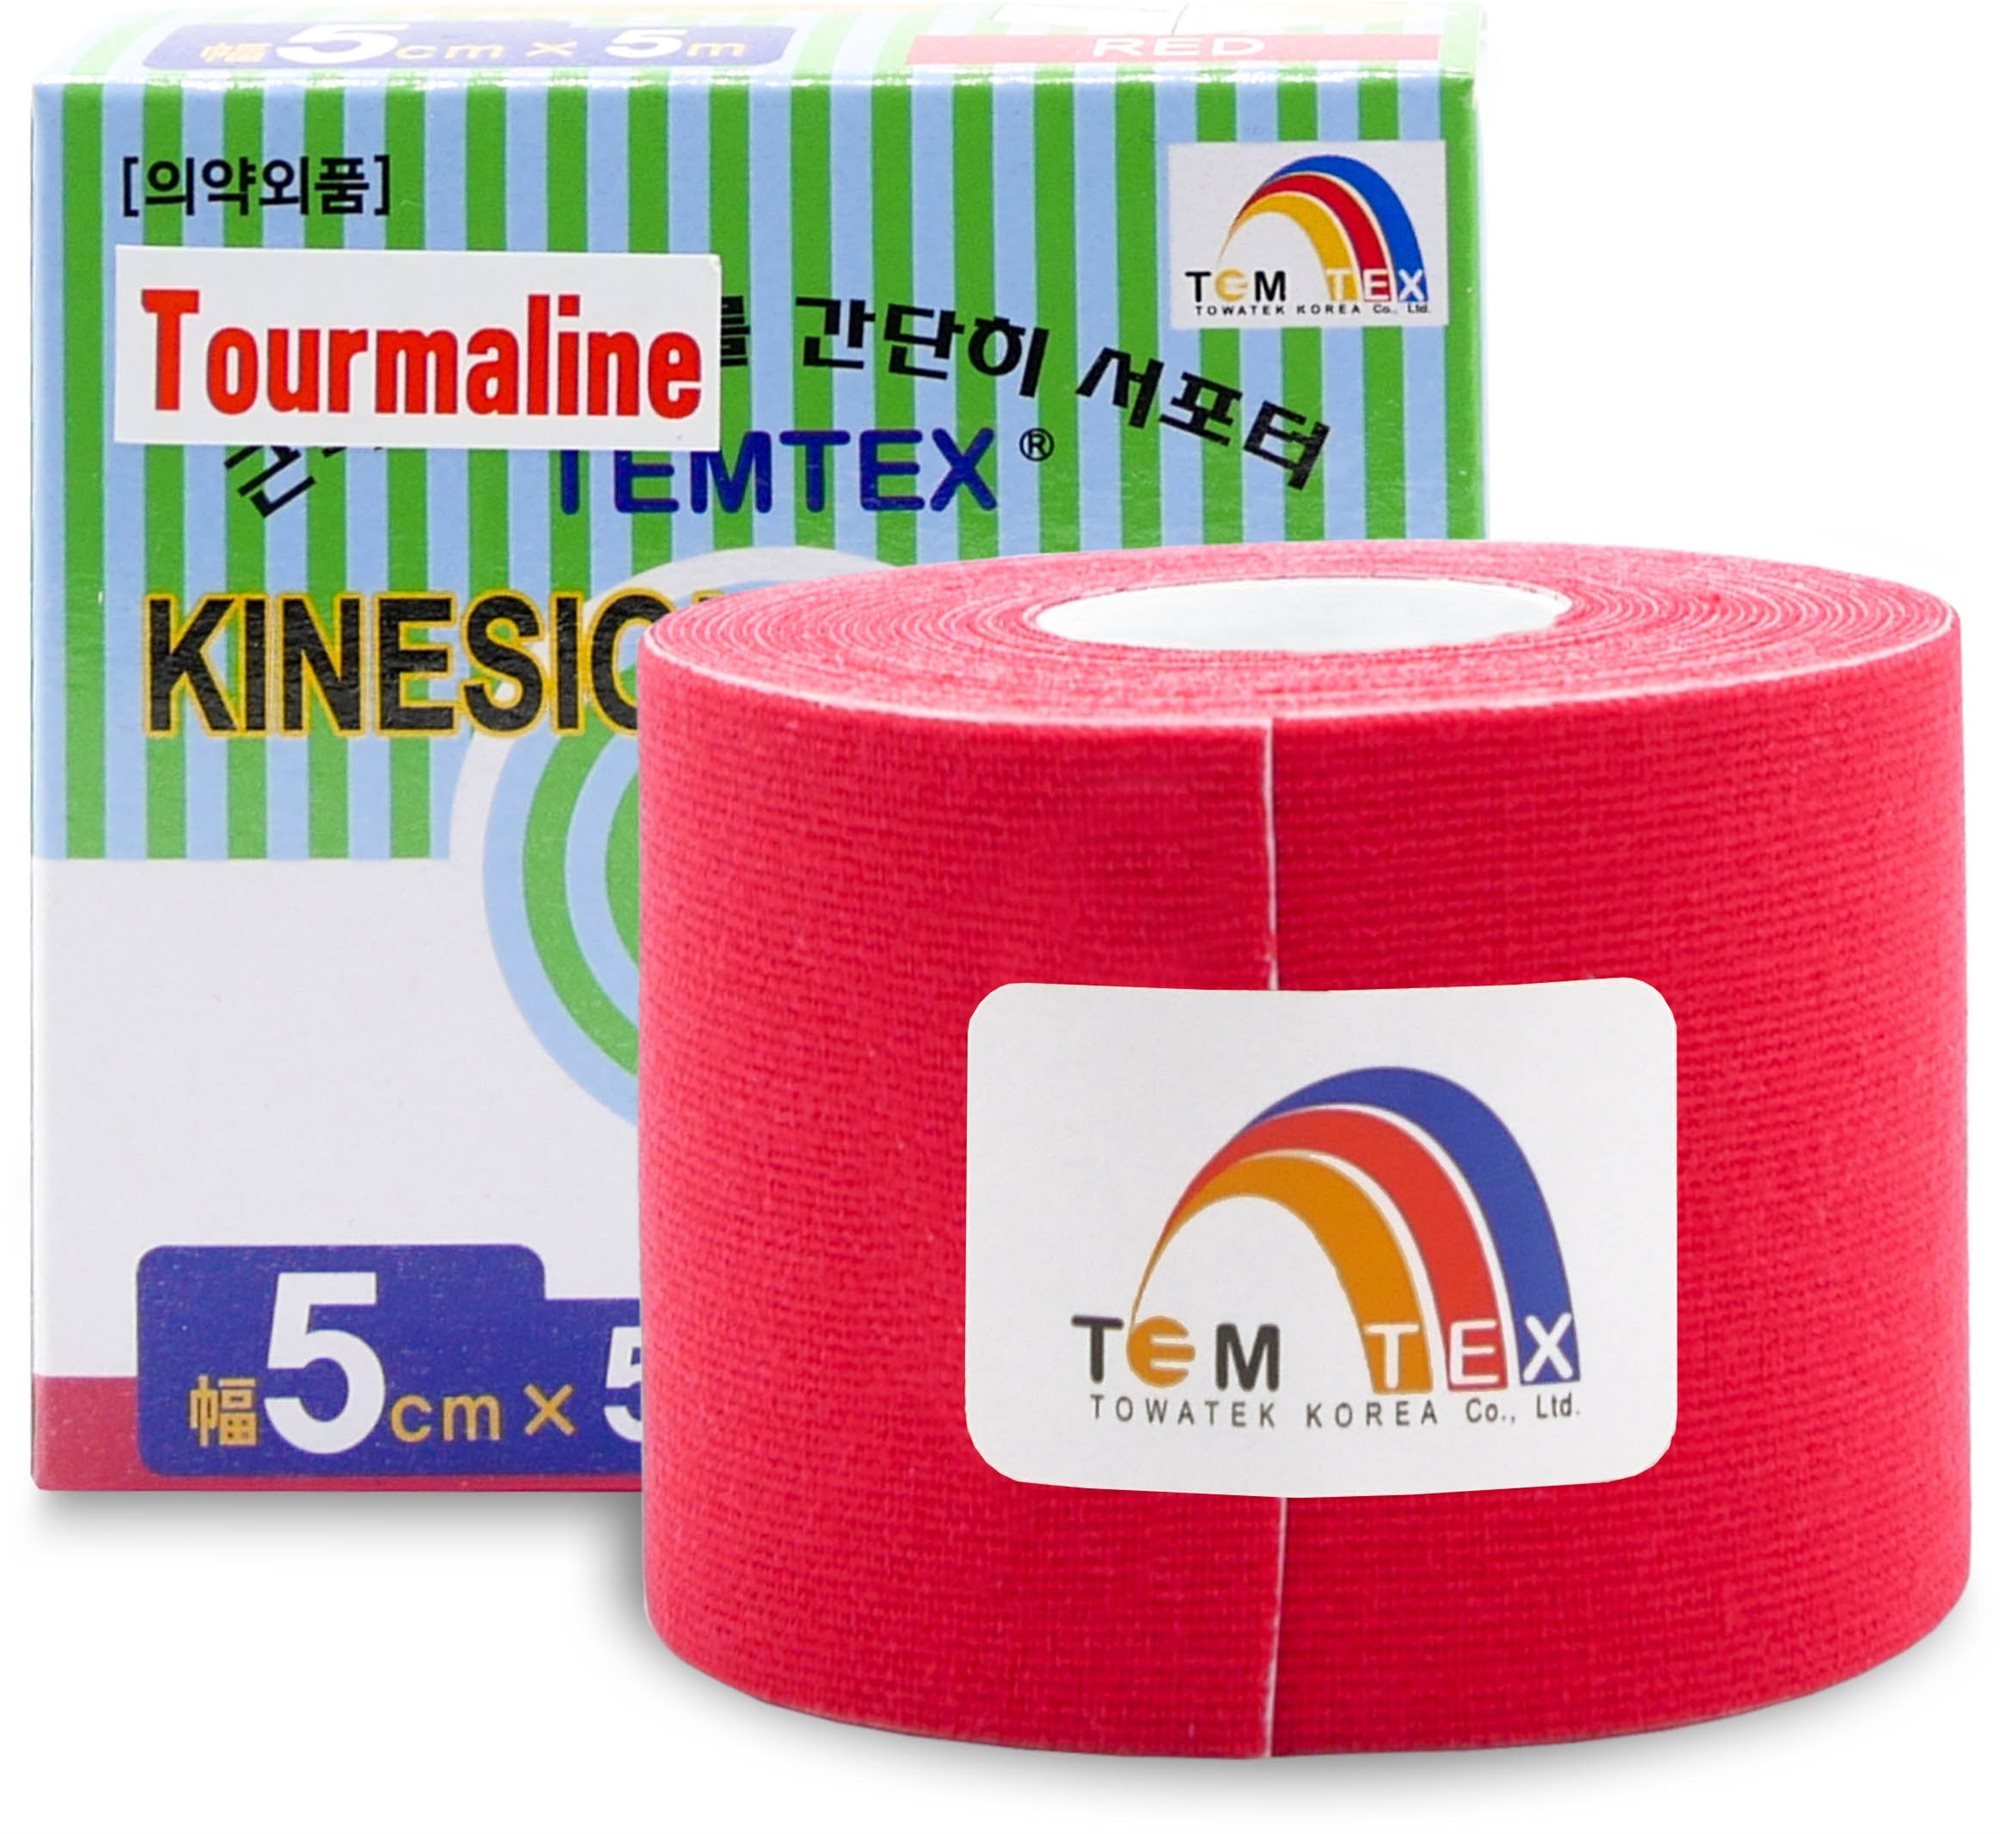 Temtex Tourmaline piros 5 cm-es kineziológiai szalag